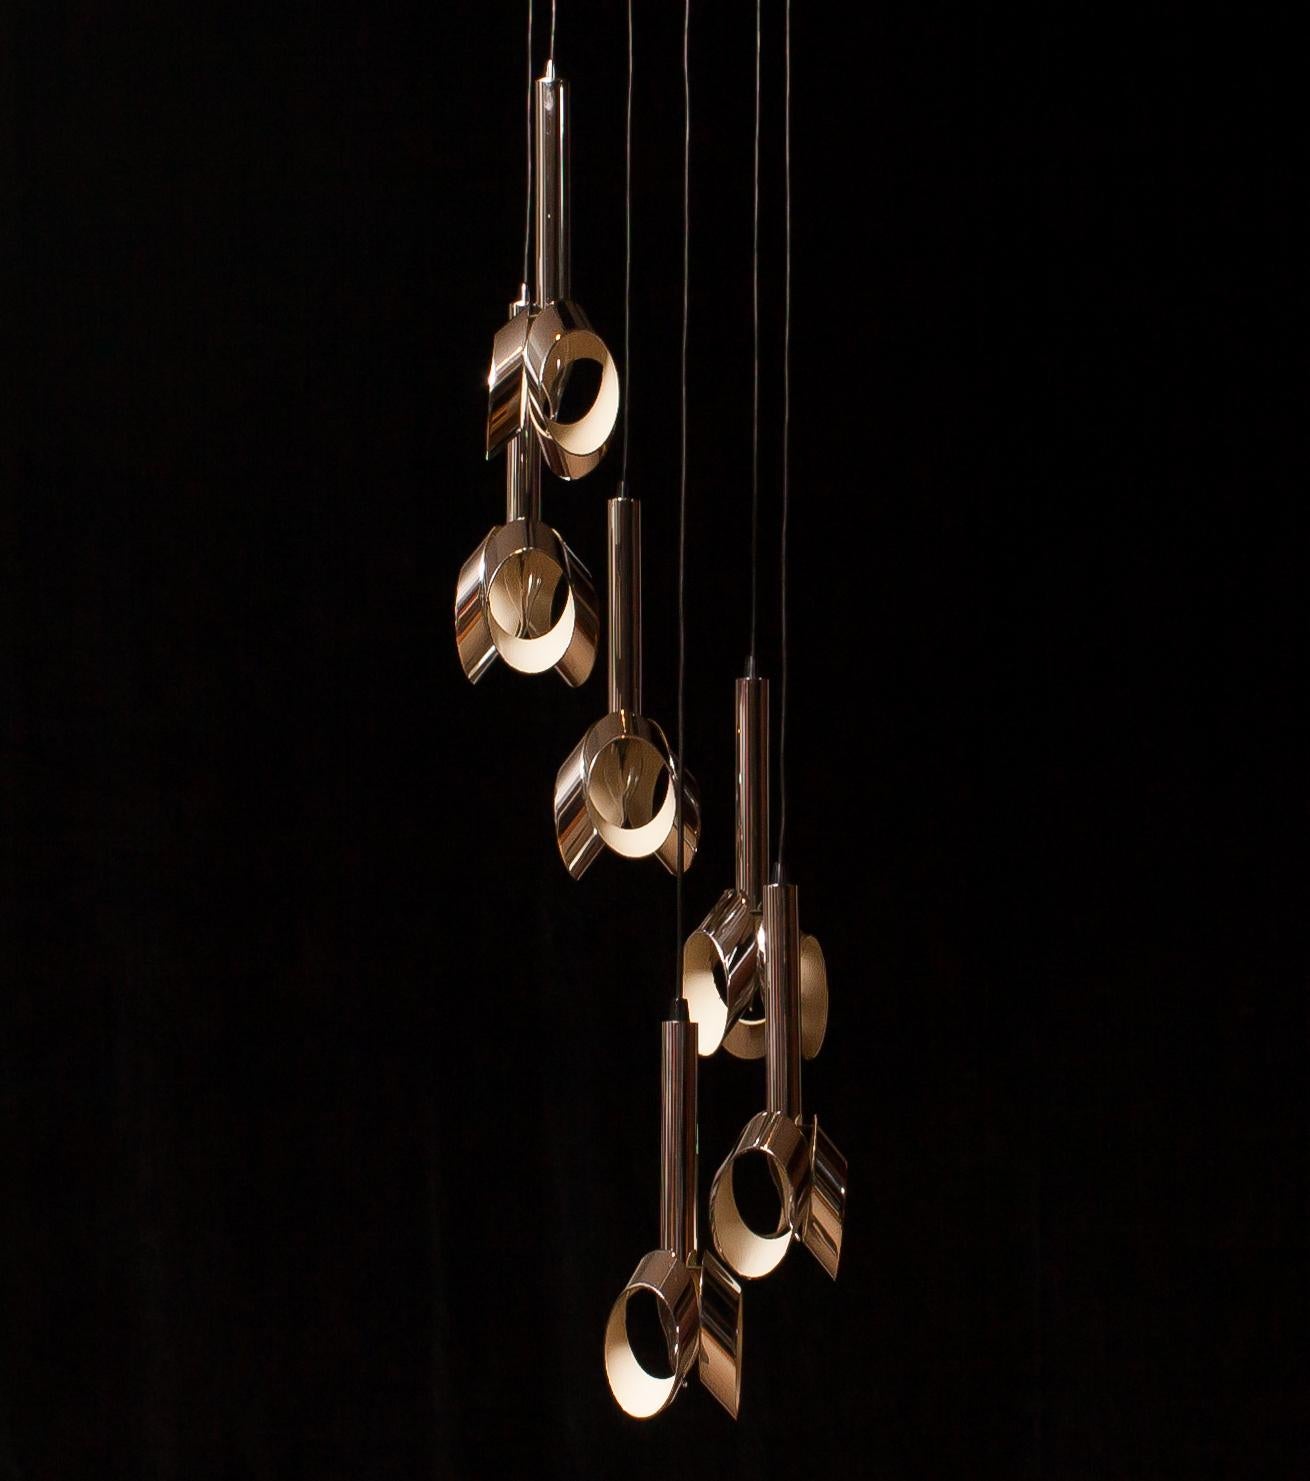 1960s, Chromed Metal Ceiling Lamp Chandelier by RAAK, Amsterdam 1